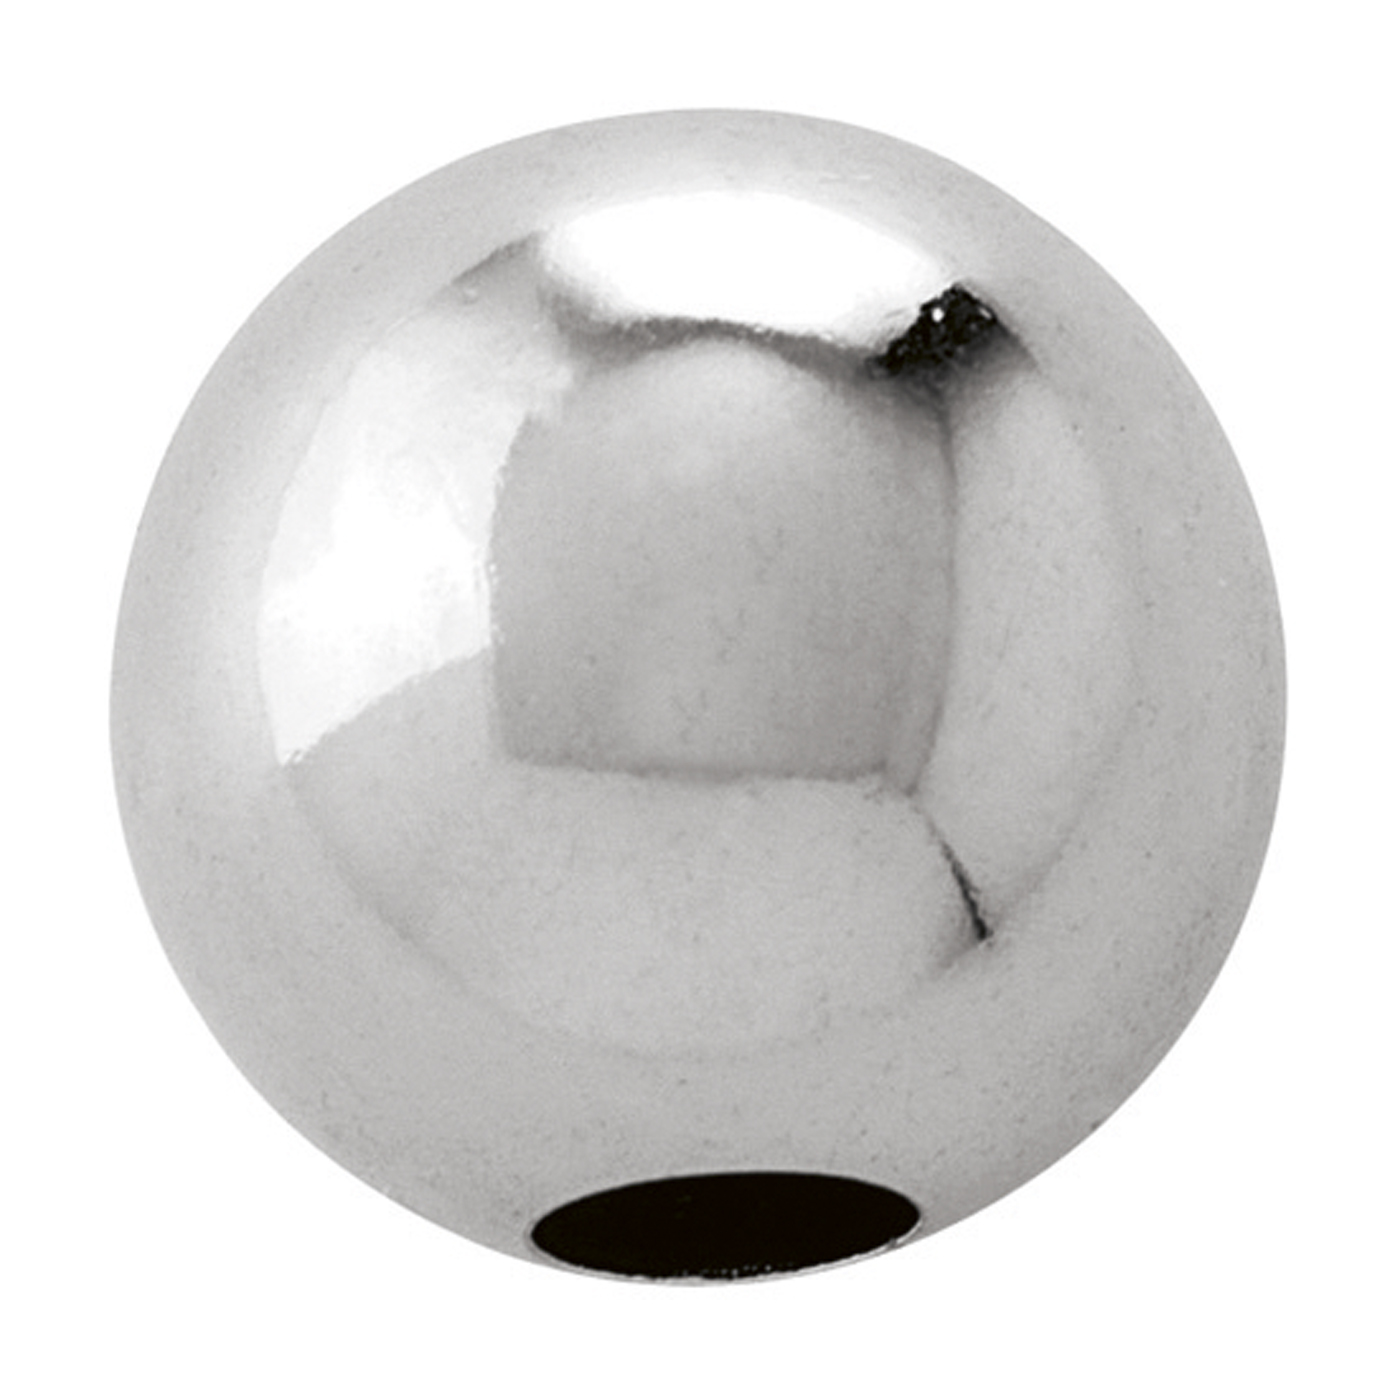 2-Hole Ball, 925Ag Polished, ø 10 mm - 1 piece